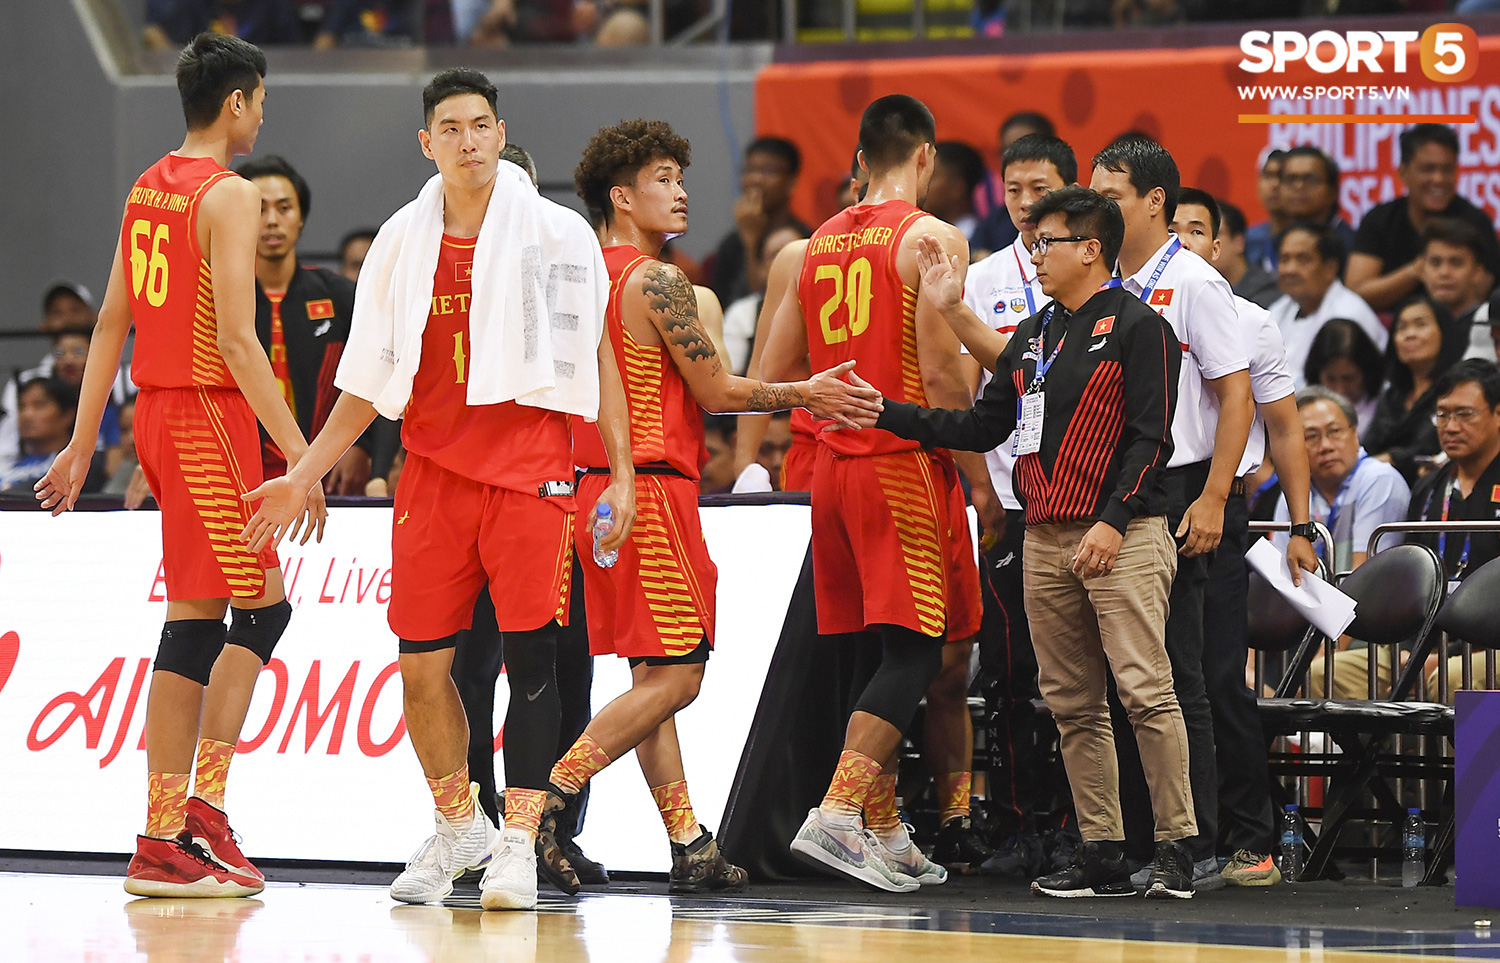 Choáng ngợp trước vẻ hào nhoáng của nhà thi đấu và sức ép từ 15.000 CĐV chủ nhà Philippines mà tuyển bóng rổ Việt Nam phải đối mặt - Ảnh 11.